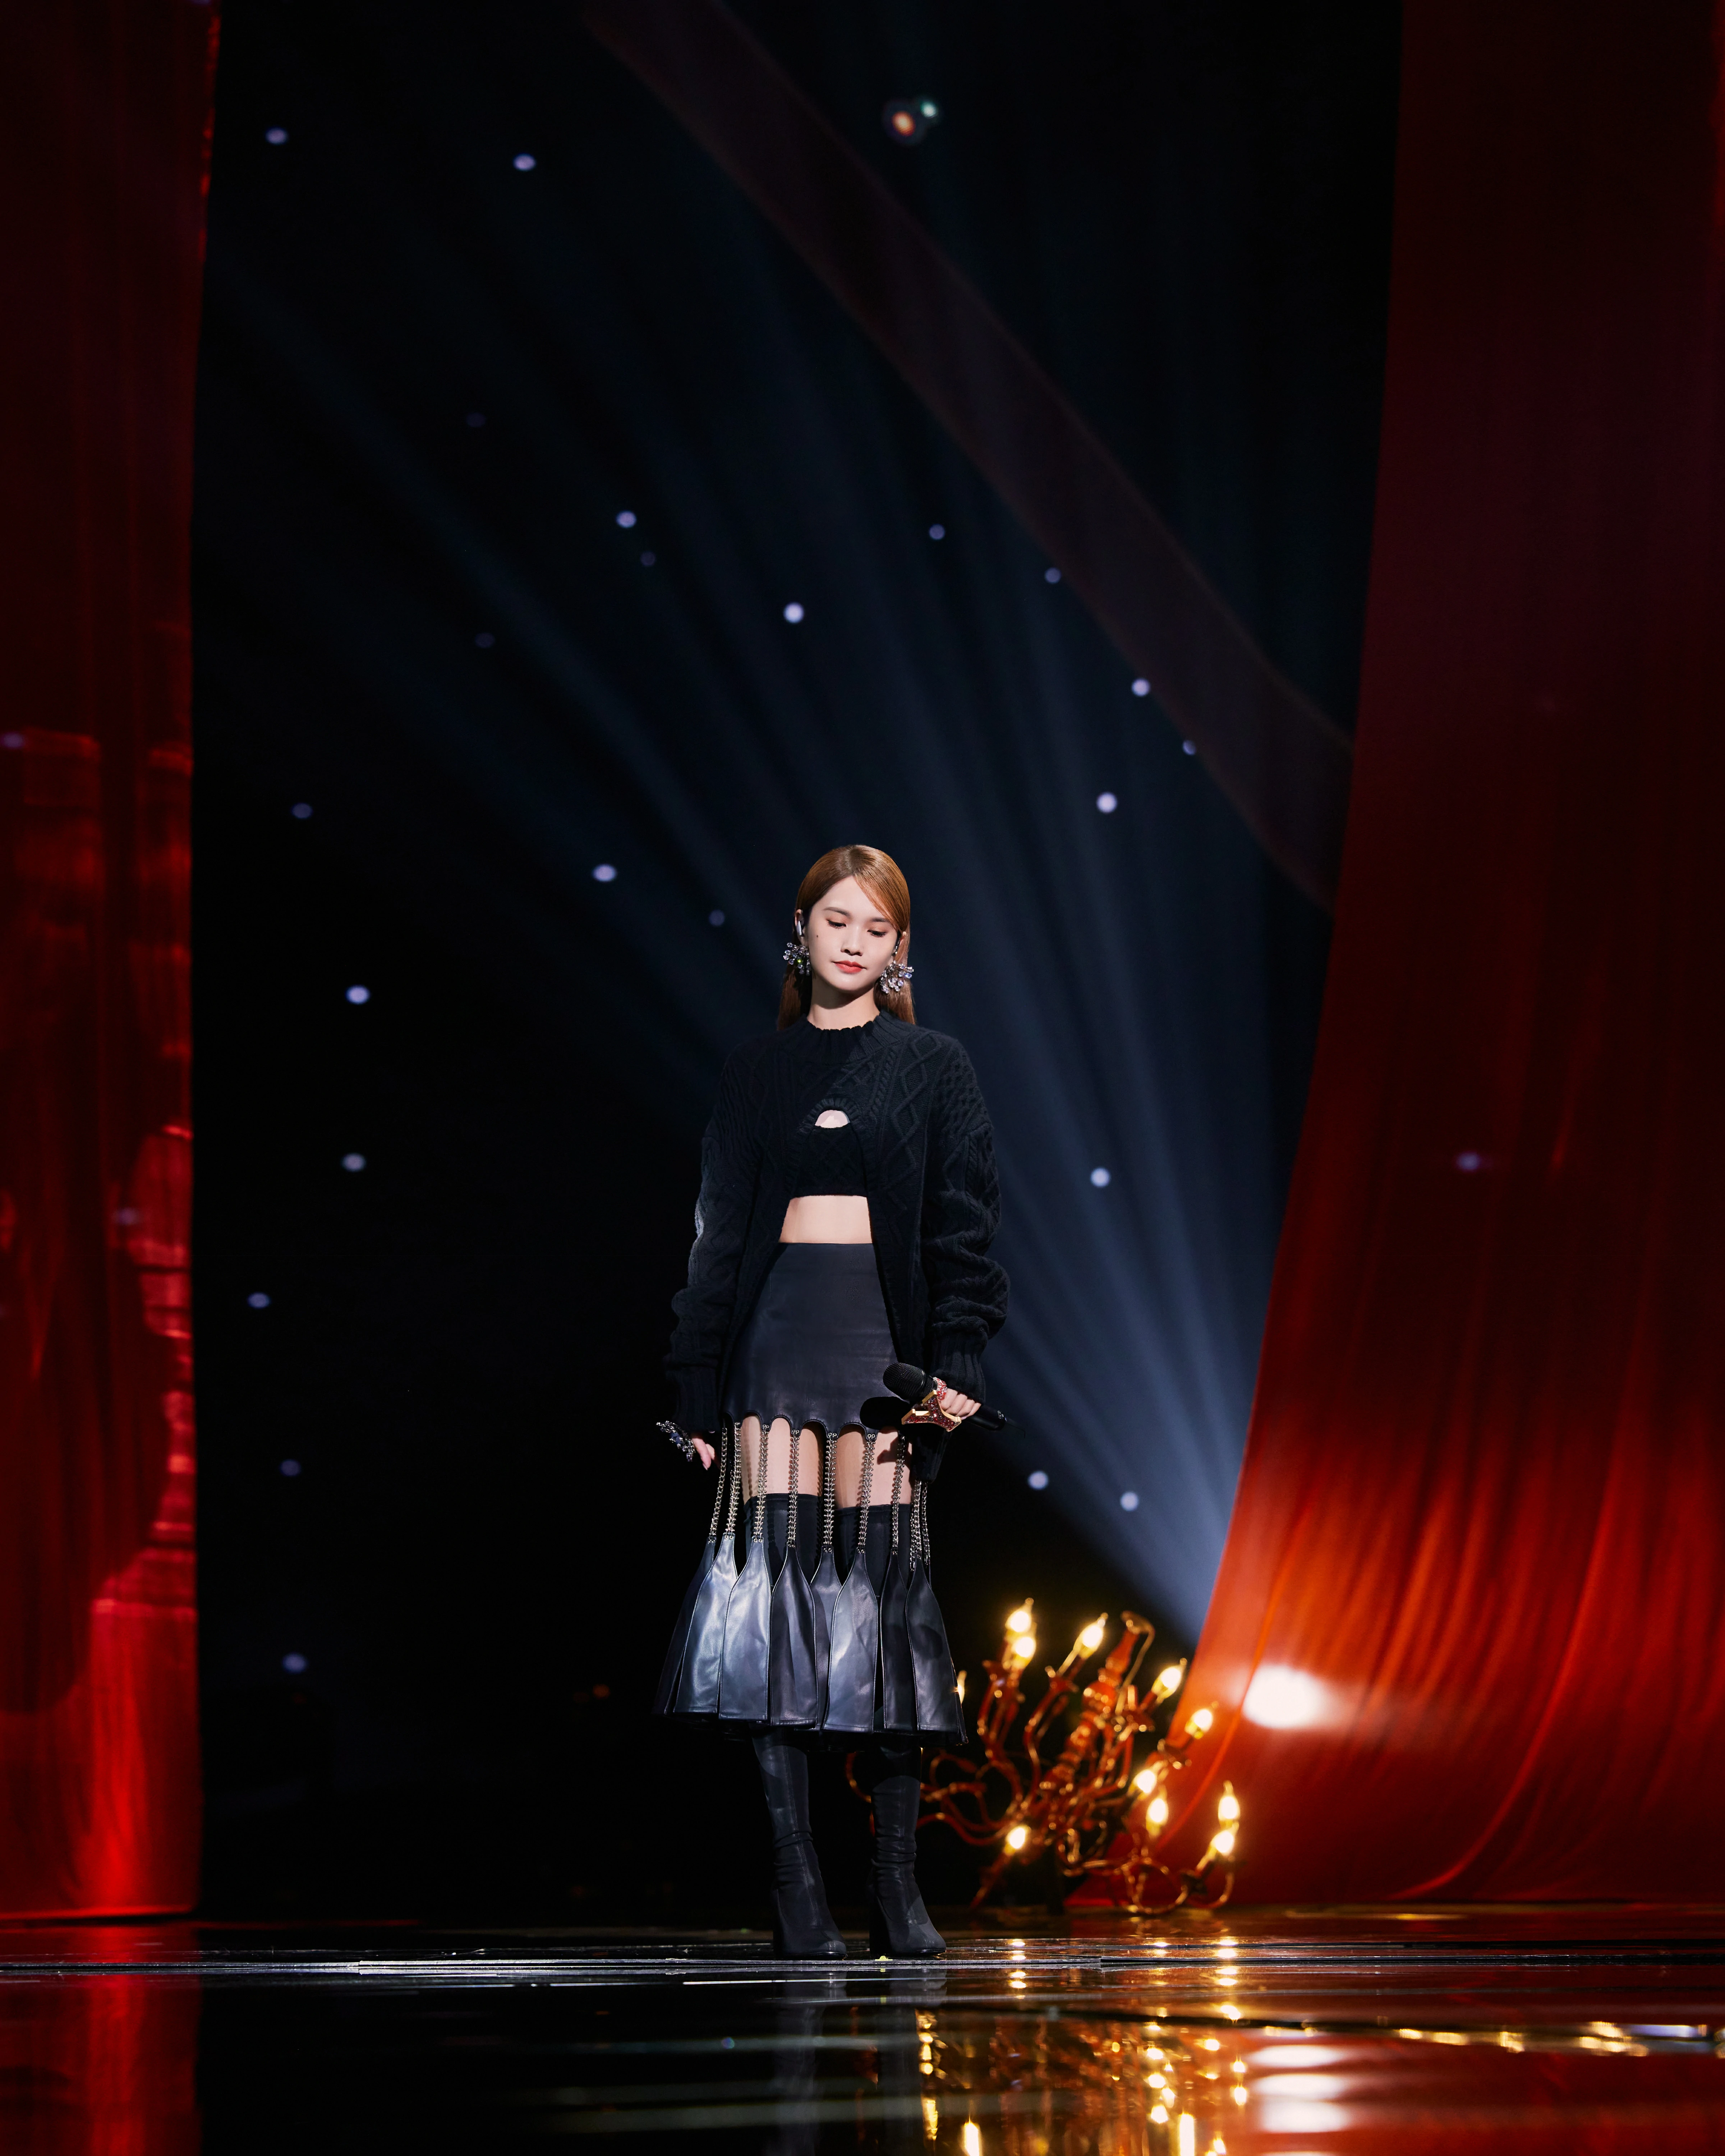 杨丞琳发布《我们的歌》舞台照 链条流苏皮裙造型秀小蛮腰,16